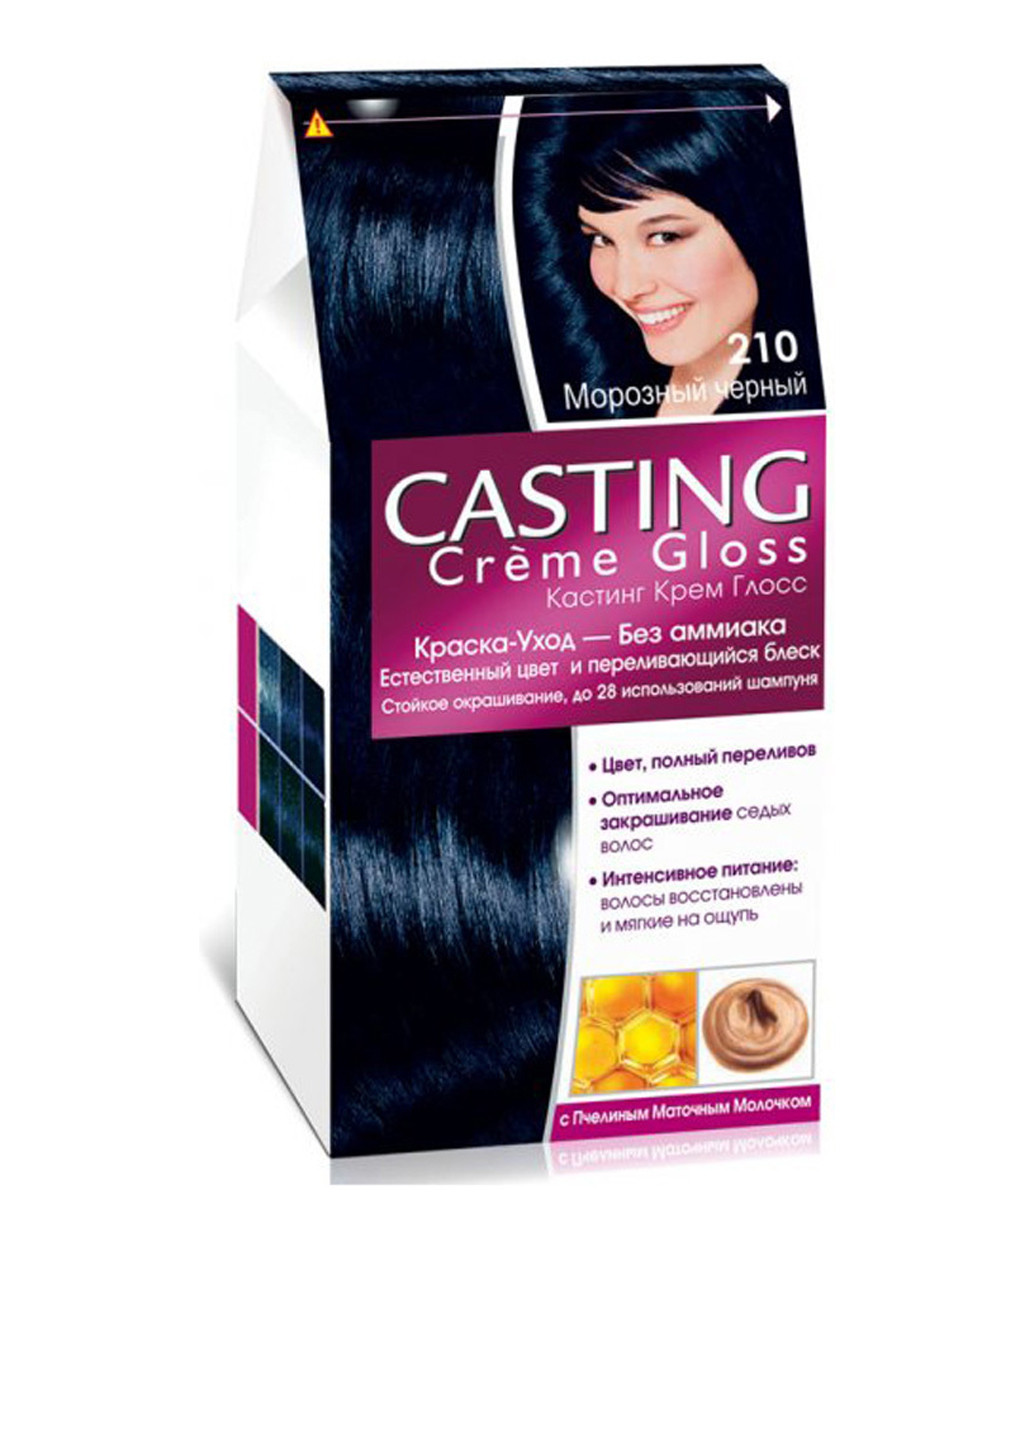 Краска для волос L'oreal Casting Creme Gloss 210 Черный перламутровый L'Oreal Paris (88095277)